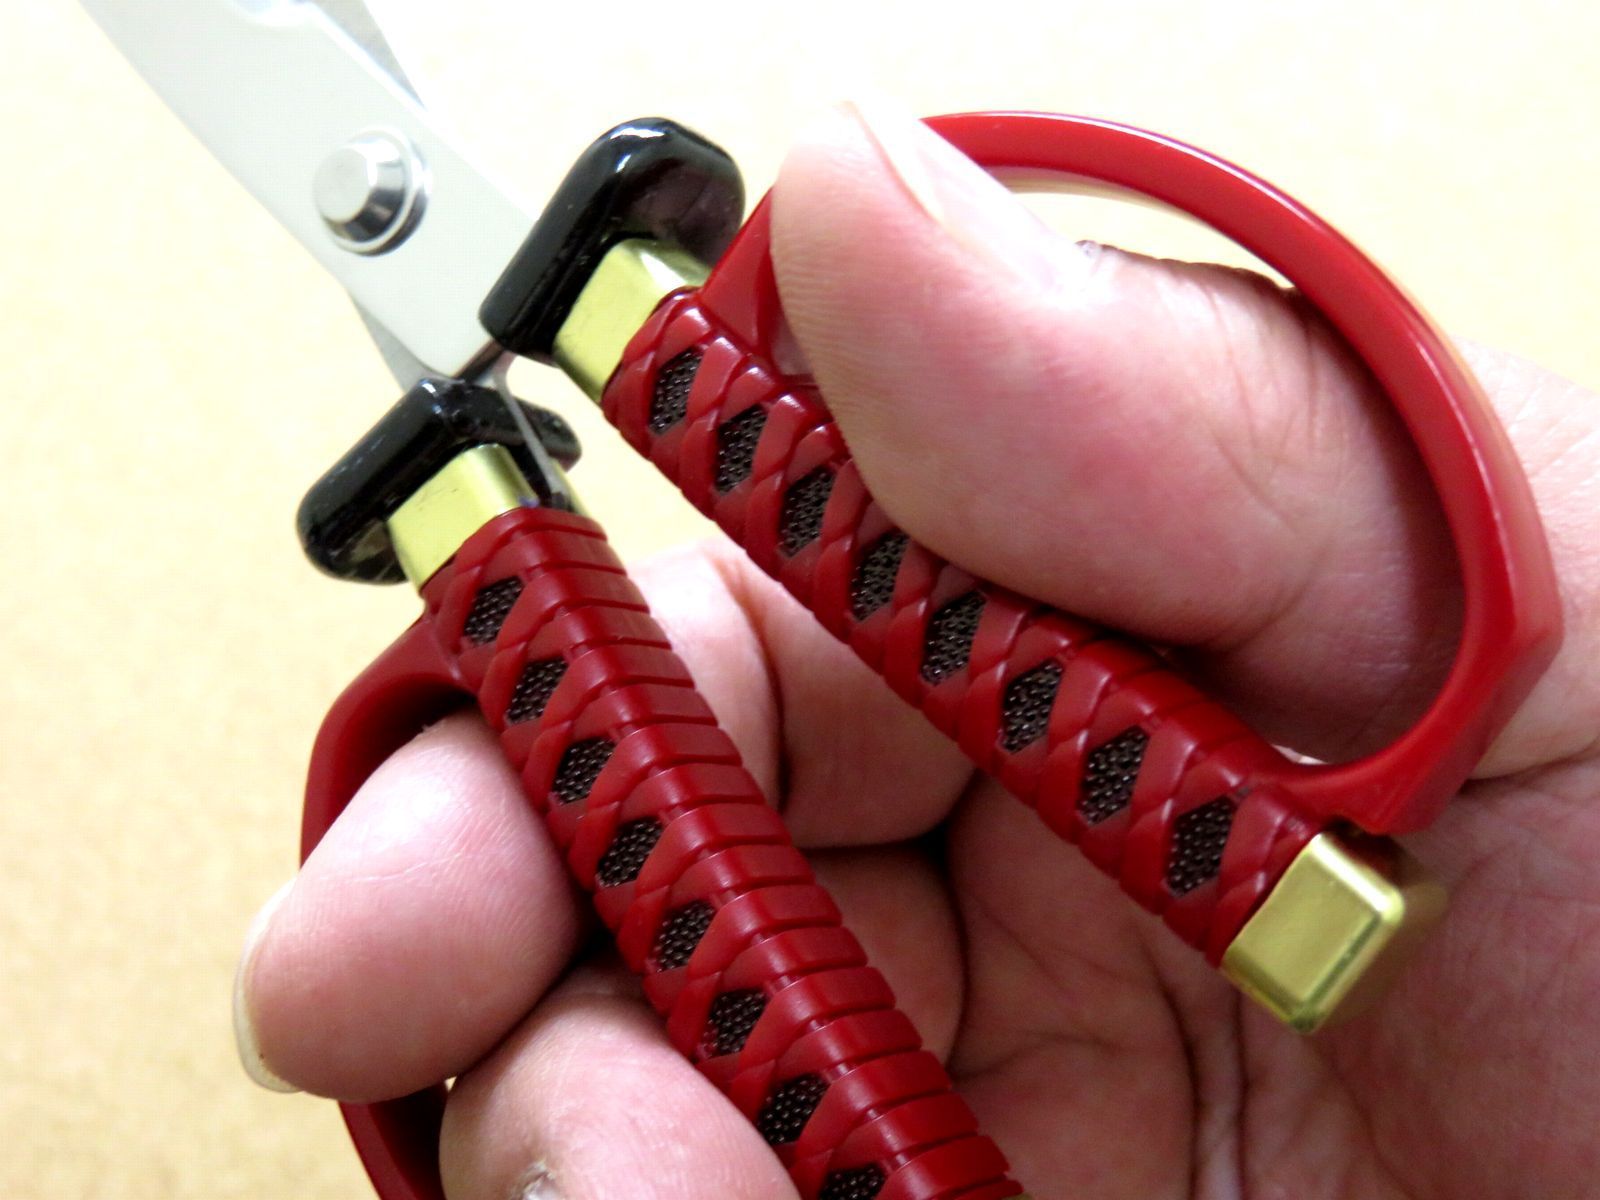 関の刃物 日本刀鋏 赤 鞘付き 掛け台付き インテリアはさみ 日本刀刃紋ハサミ 関の刃物SKKカトラリー メルカリ